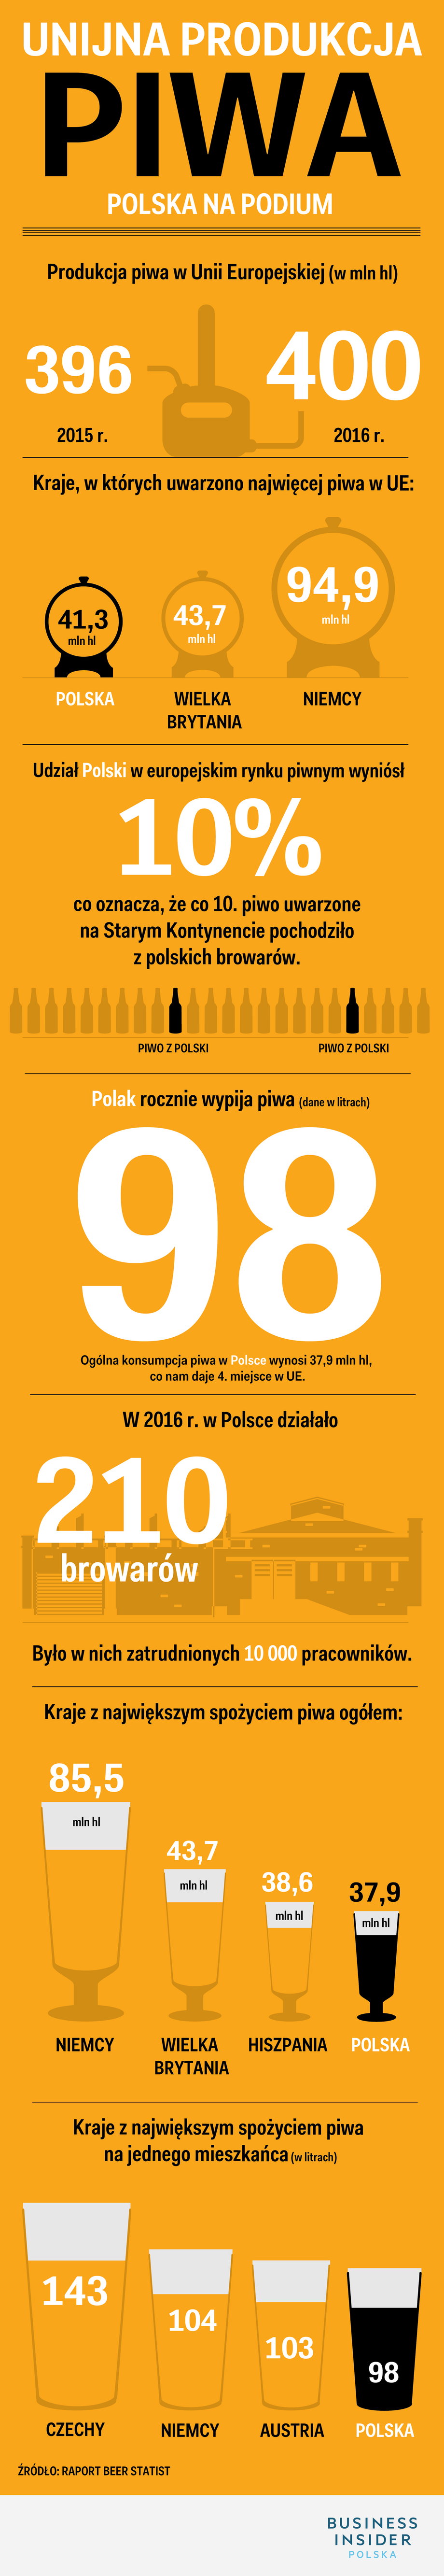 Produkcja piwa w UE w 2016 r. Polska na podium